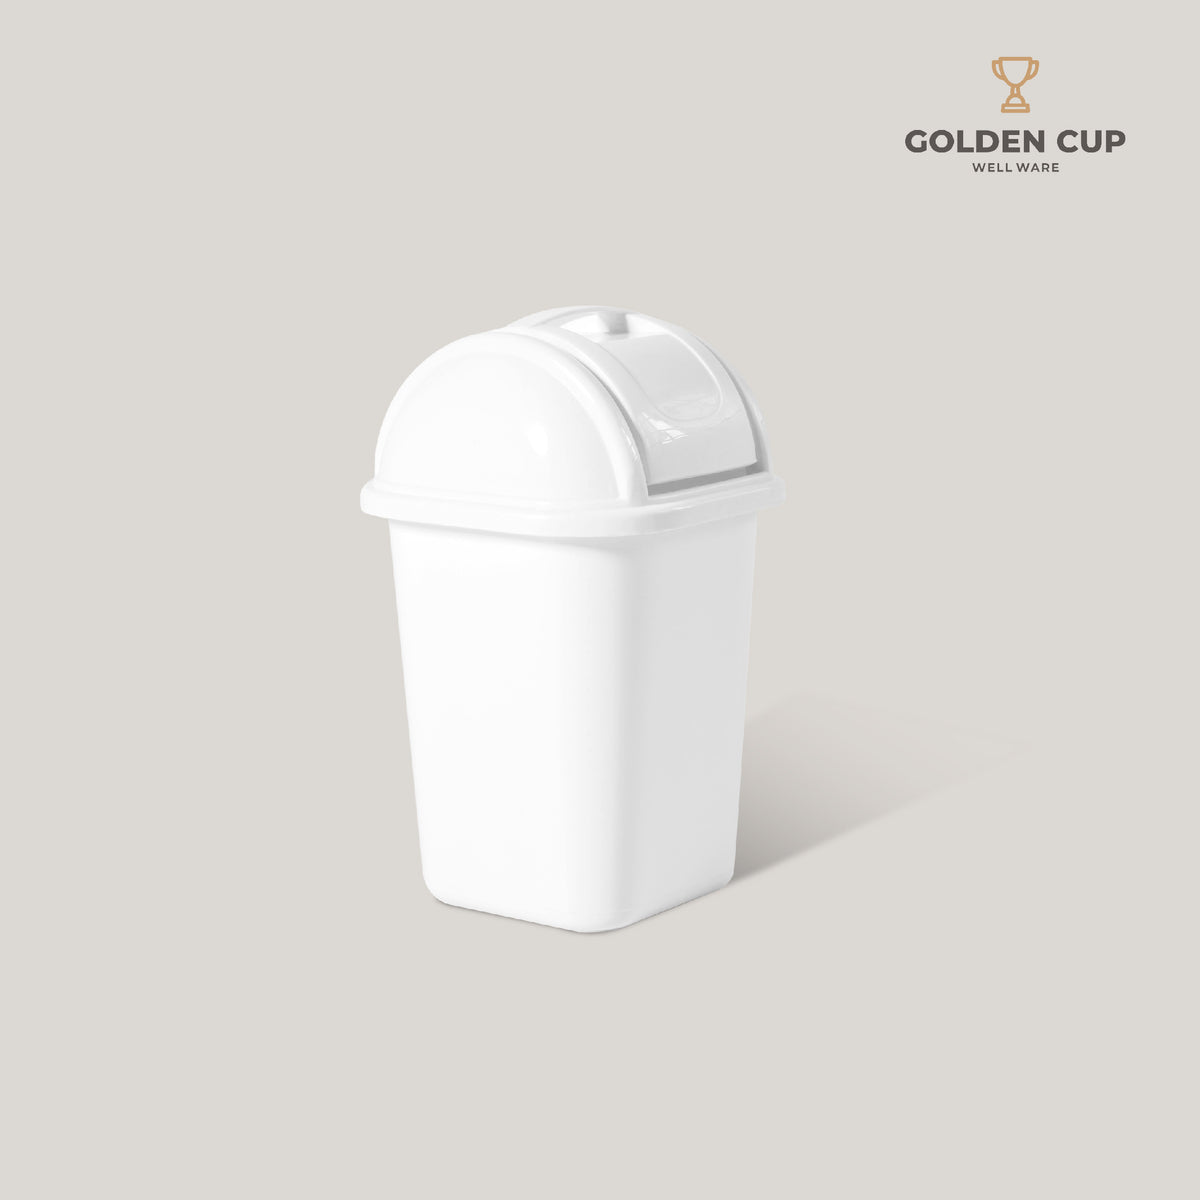 GOLDEN CUP ถังขยะฝาสวิง 6 ลิตร AG211